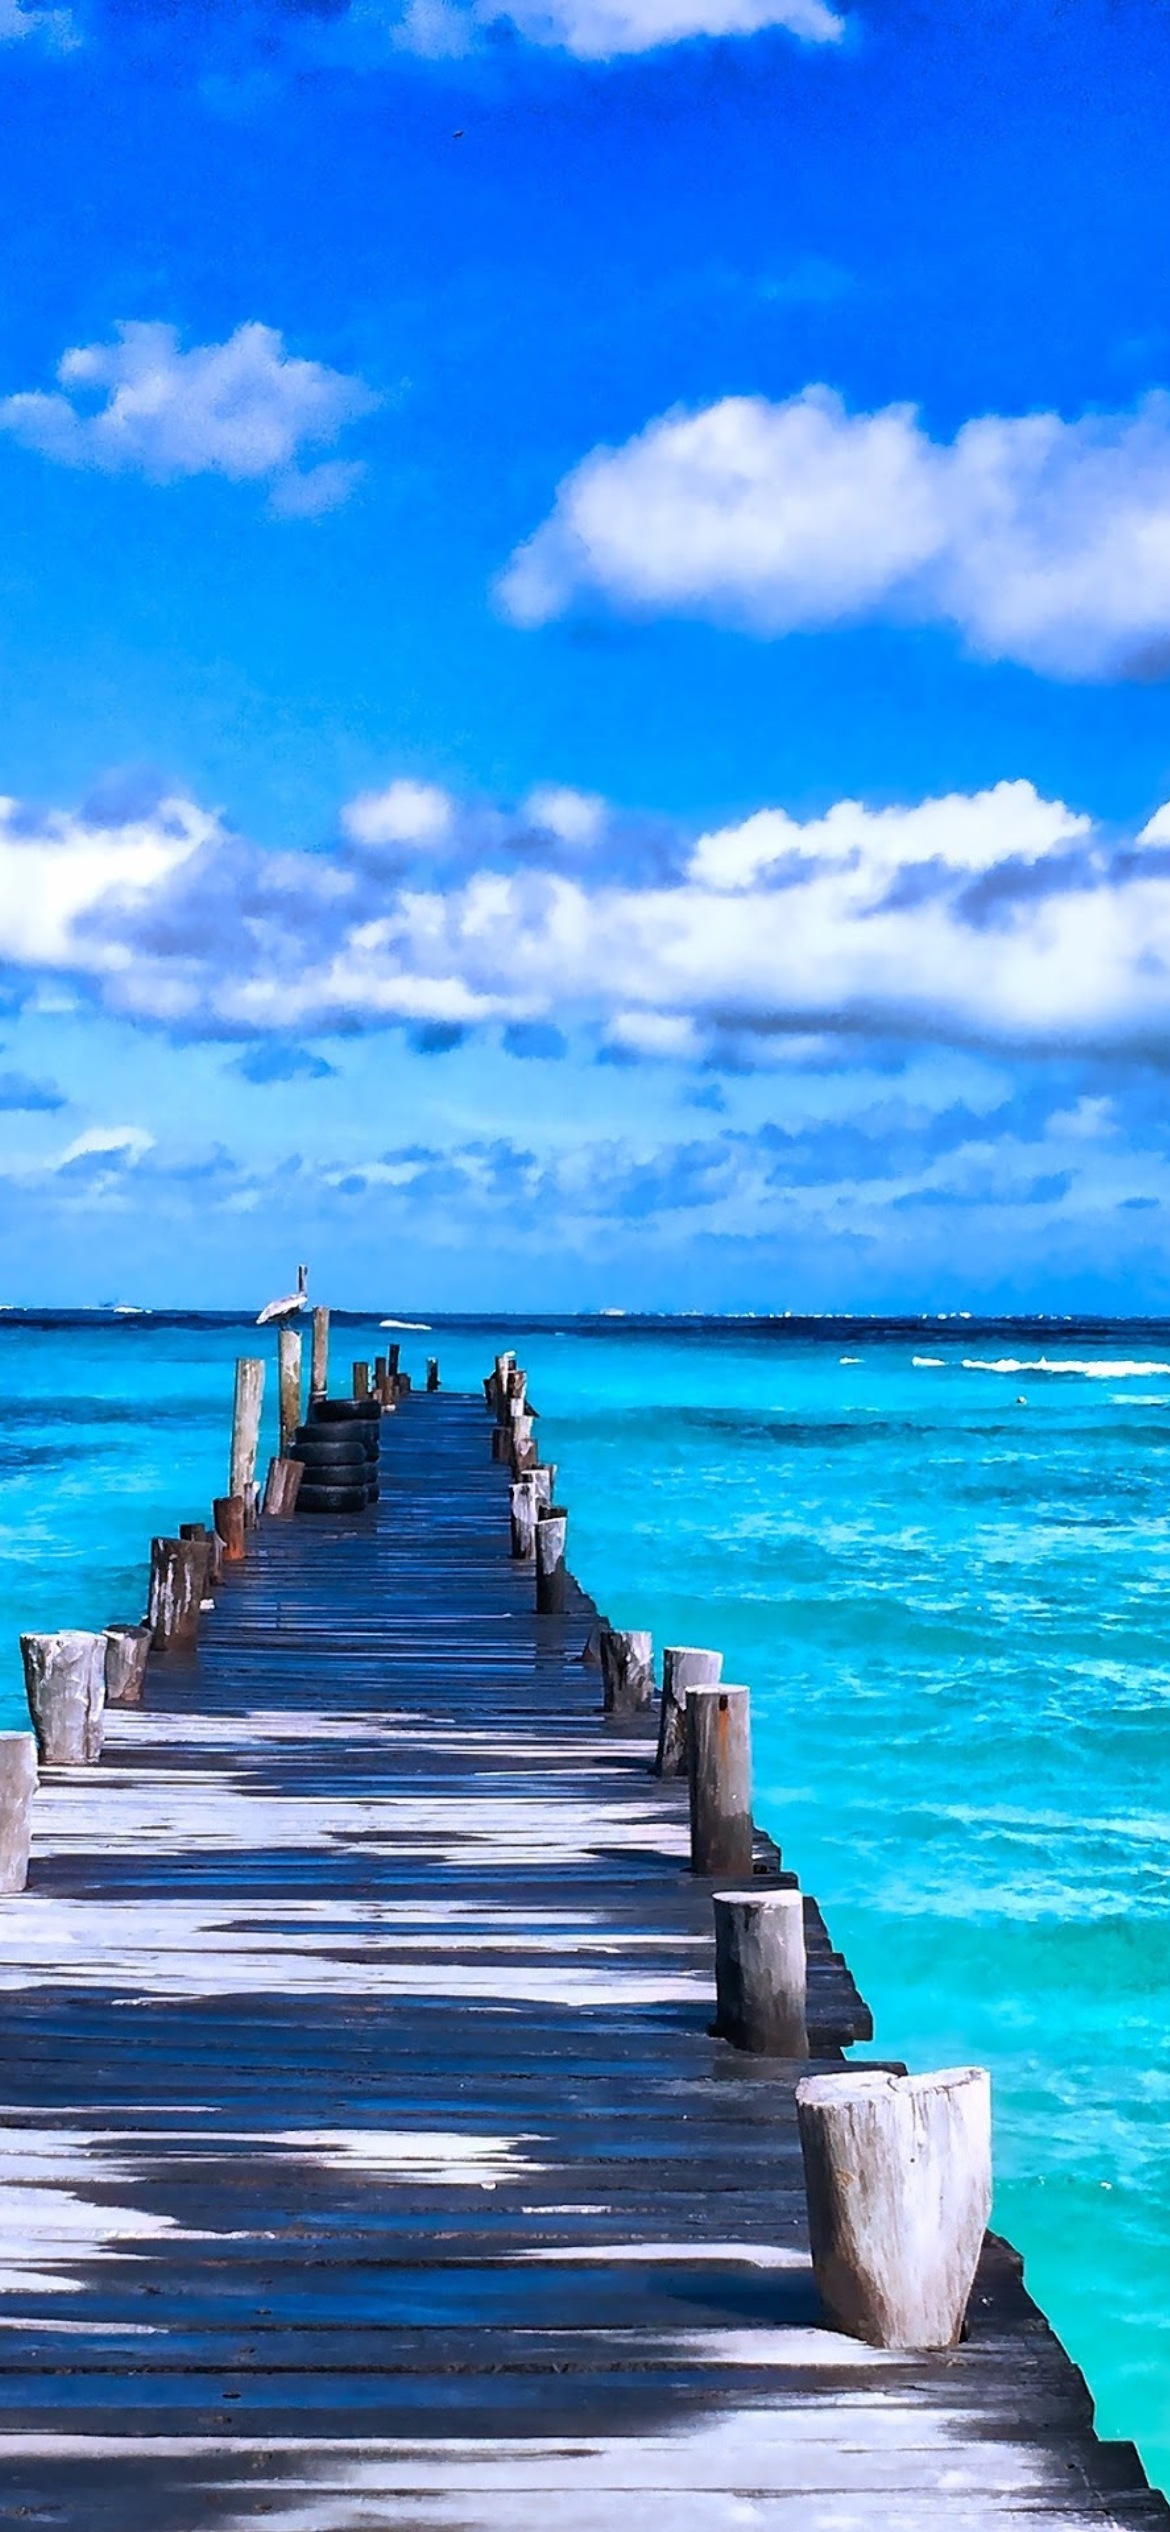 Hình nền biển xanh: Biển xanh biếc luôn được xem như biểu tượng của sự yên bình và thanh tịnh. Hình nền biển xanh kết hợp cùng bầu trời xanh saphia sẽ tạo ra một bức tranh đẹp như trong trippy dream, đưa bạn đến những cung bậc tuyệt vời của tâm hồn.